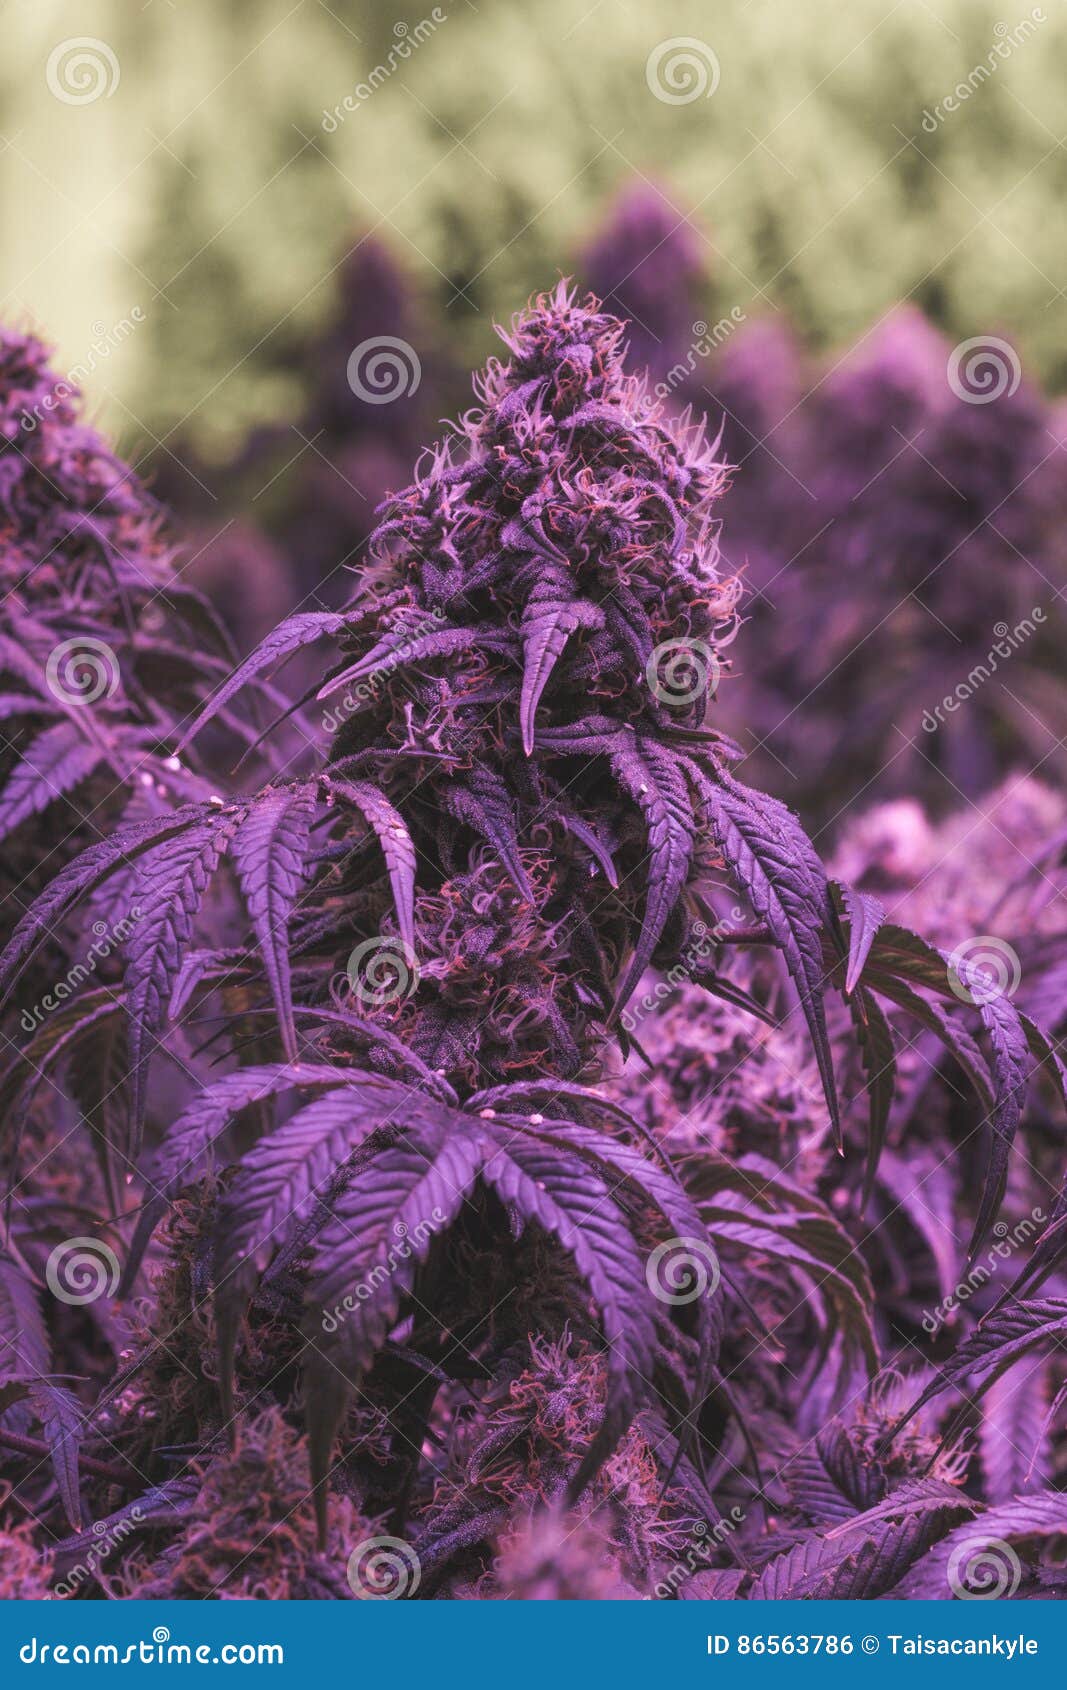 Конопля фиолетовая фото марихуана и заикание